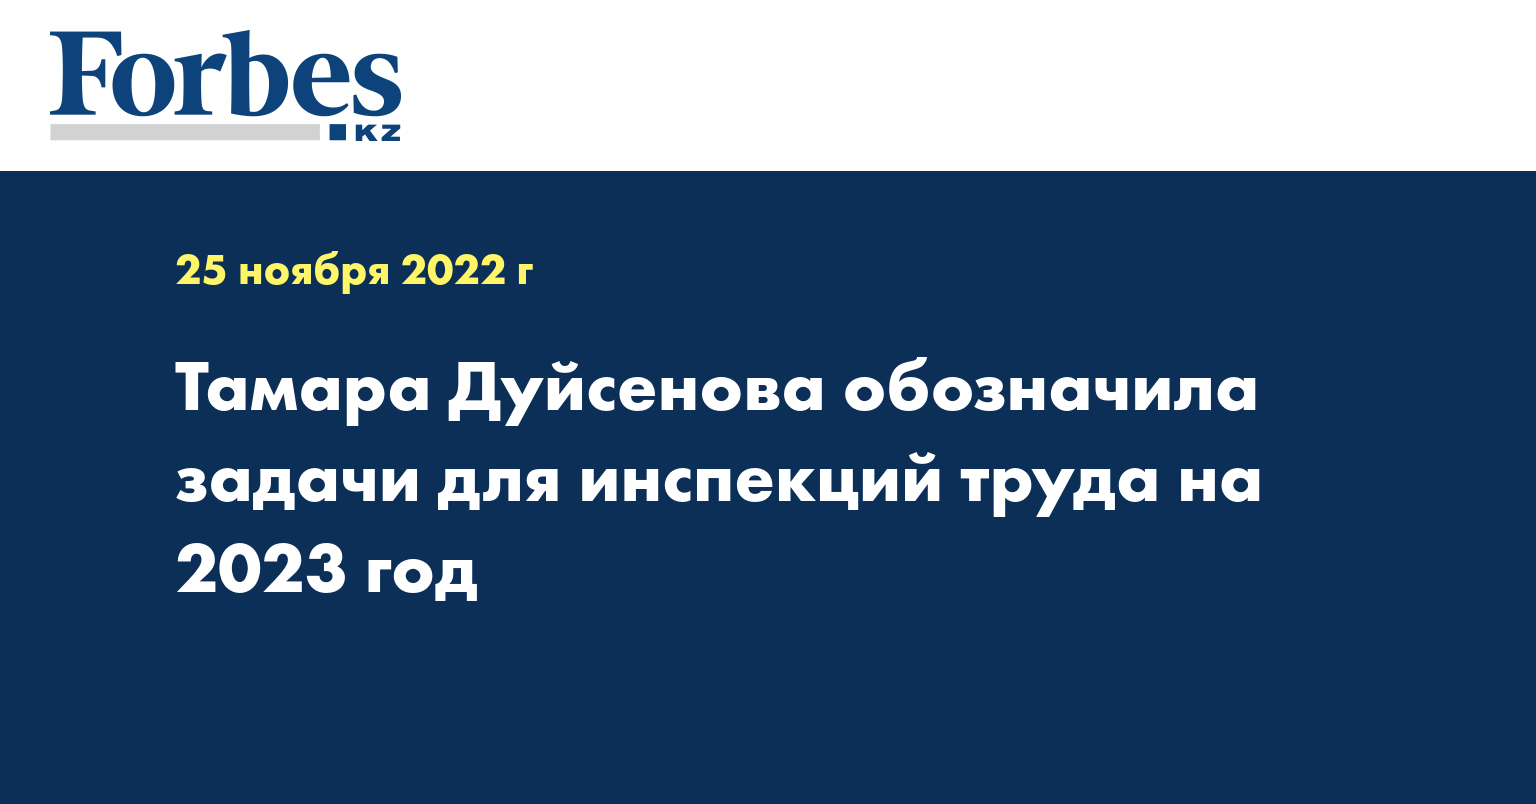 Тамара Дуйсенова обозначила задачи для инспекций труда на 2023 год